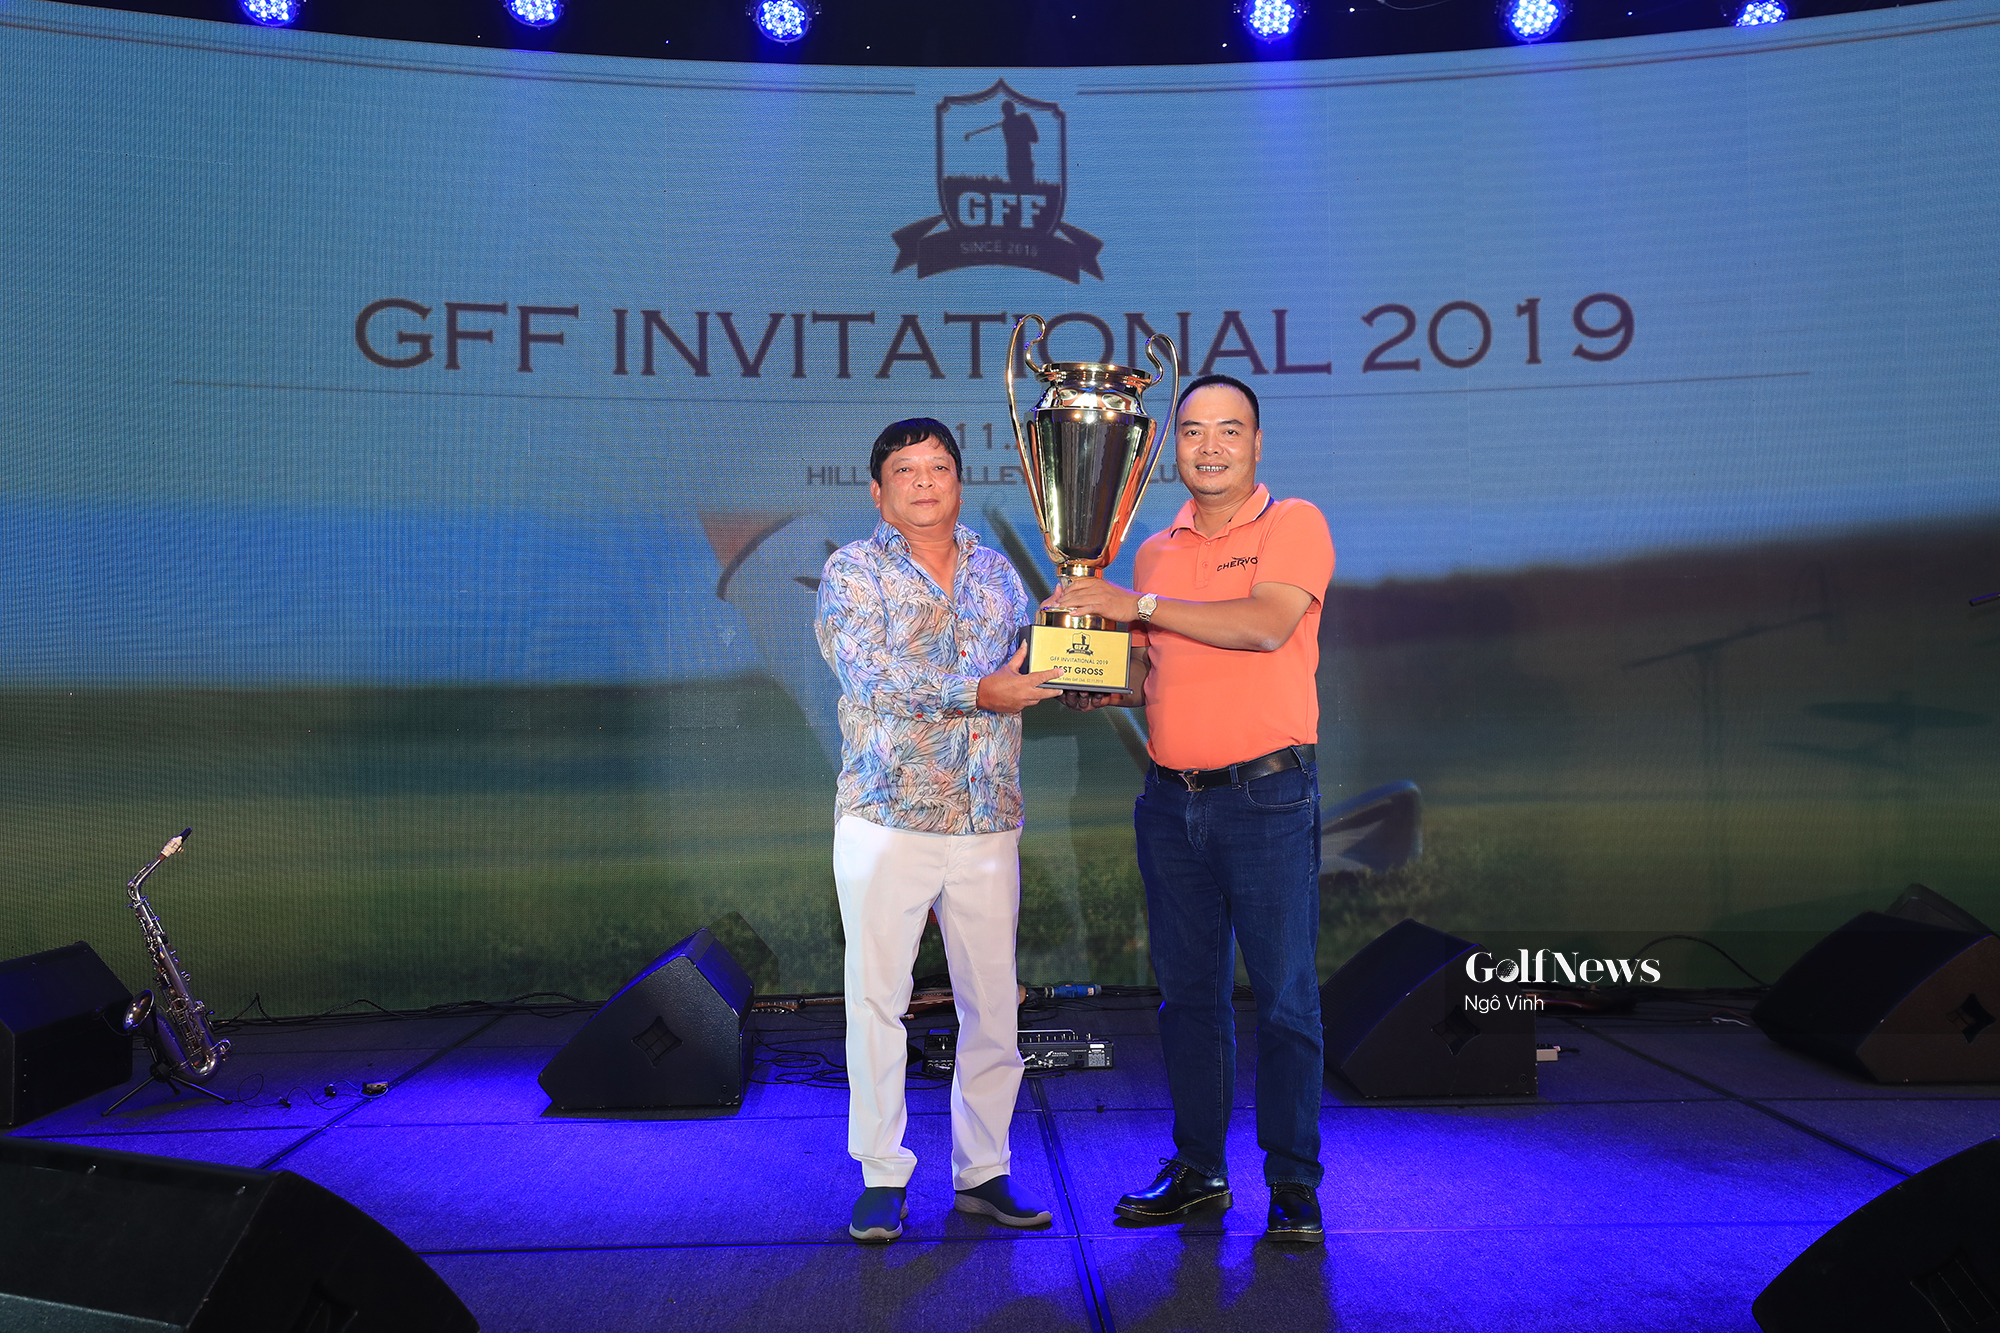 Hơn 300 triệu đồng được quyên góp làm từ thiện ở giải GFF Invitational 2019